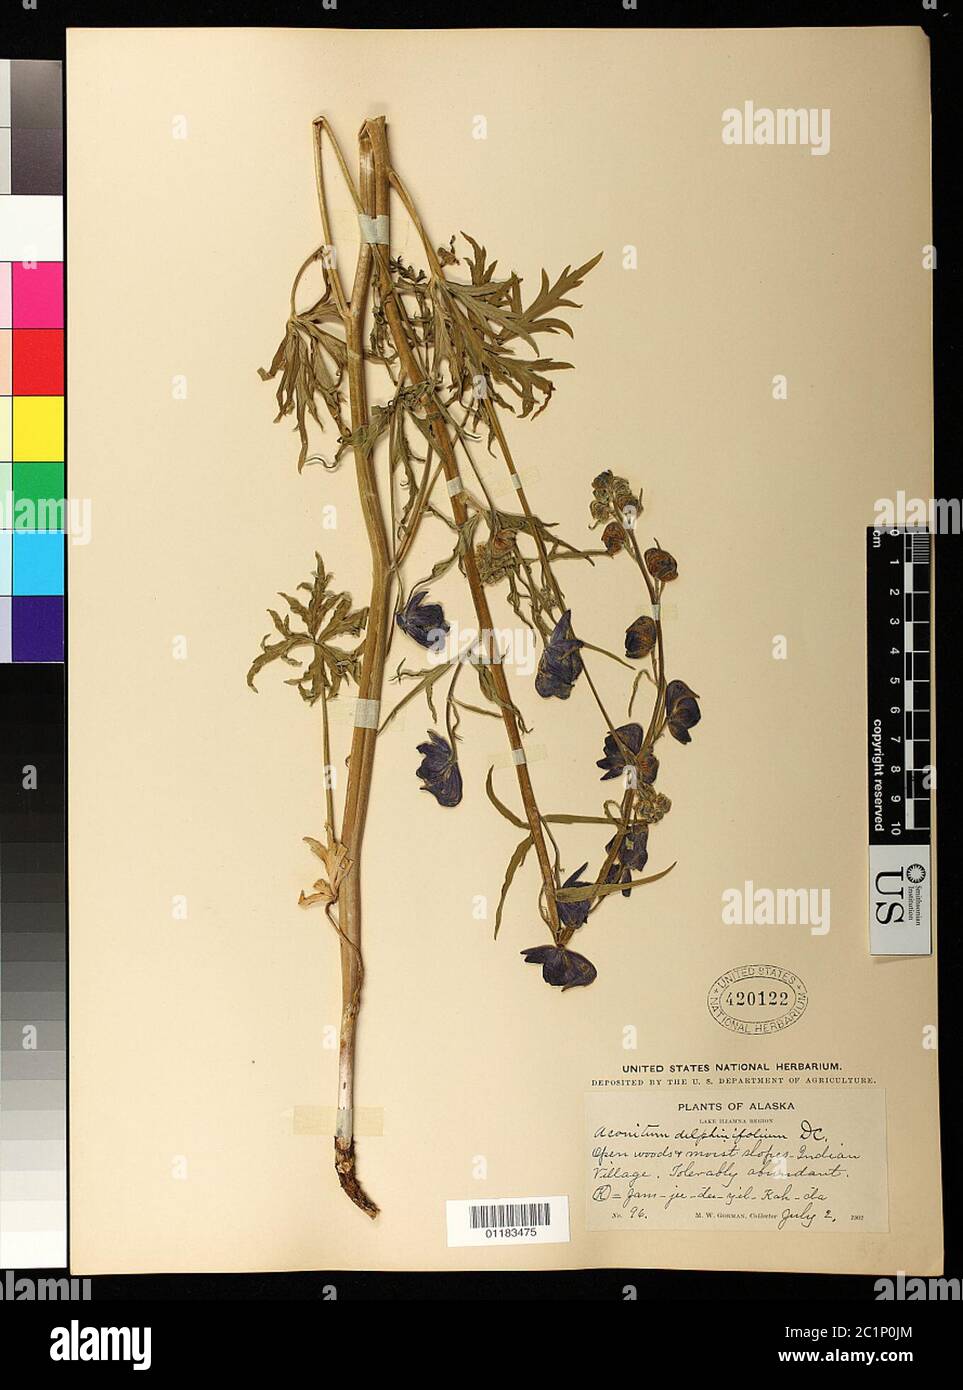 Aconitum delphinifolium DC Aconitum delphinifolium DC. Stock Photo